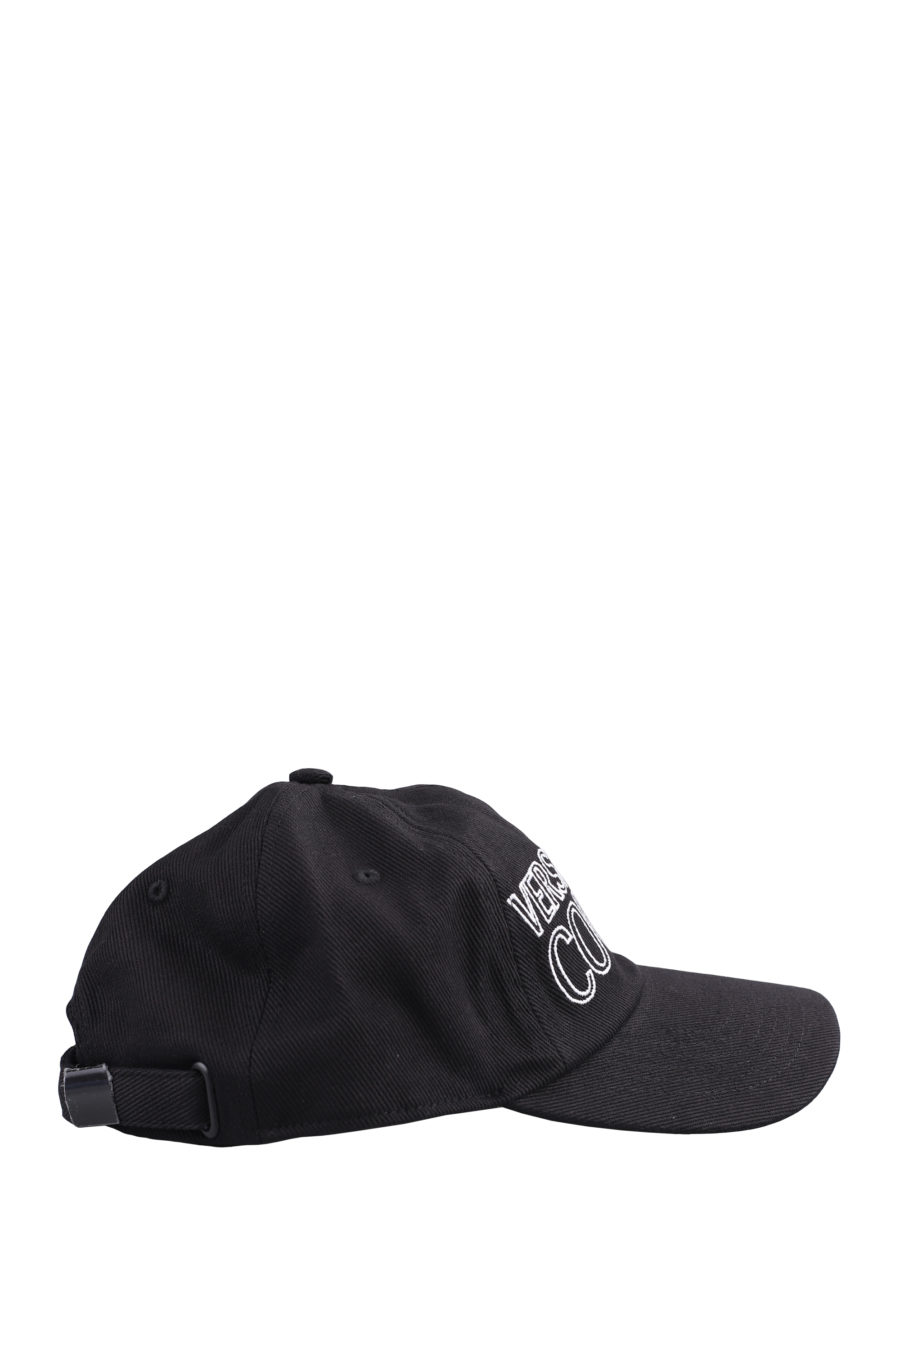 Gorra negra con logo bordado blanco - IMG 0921